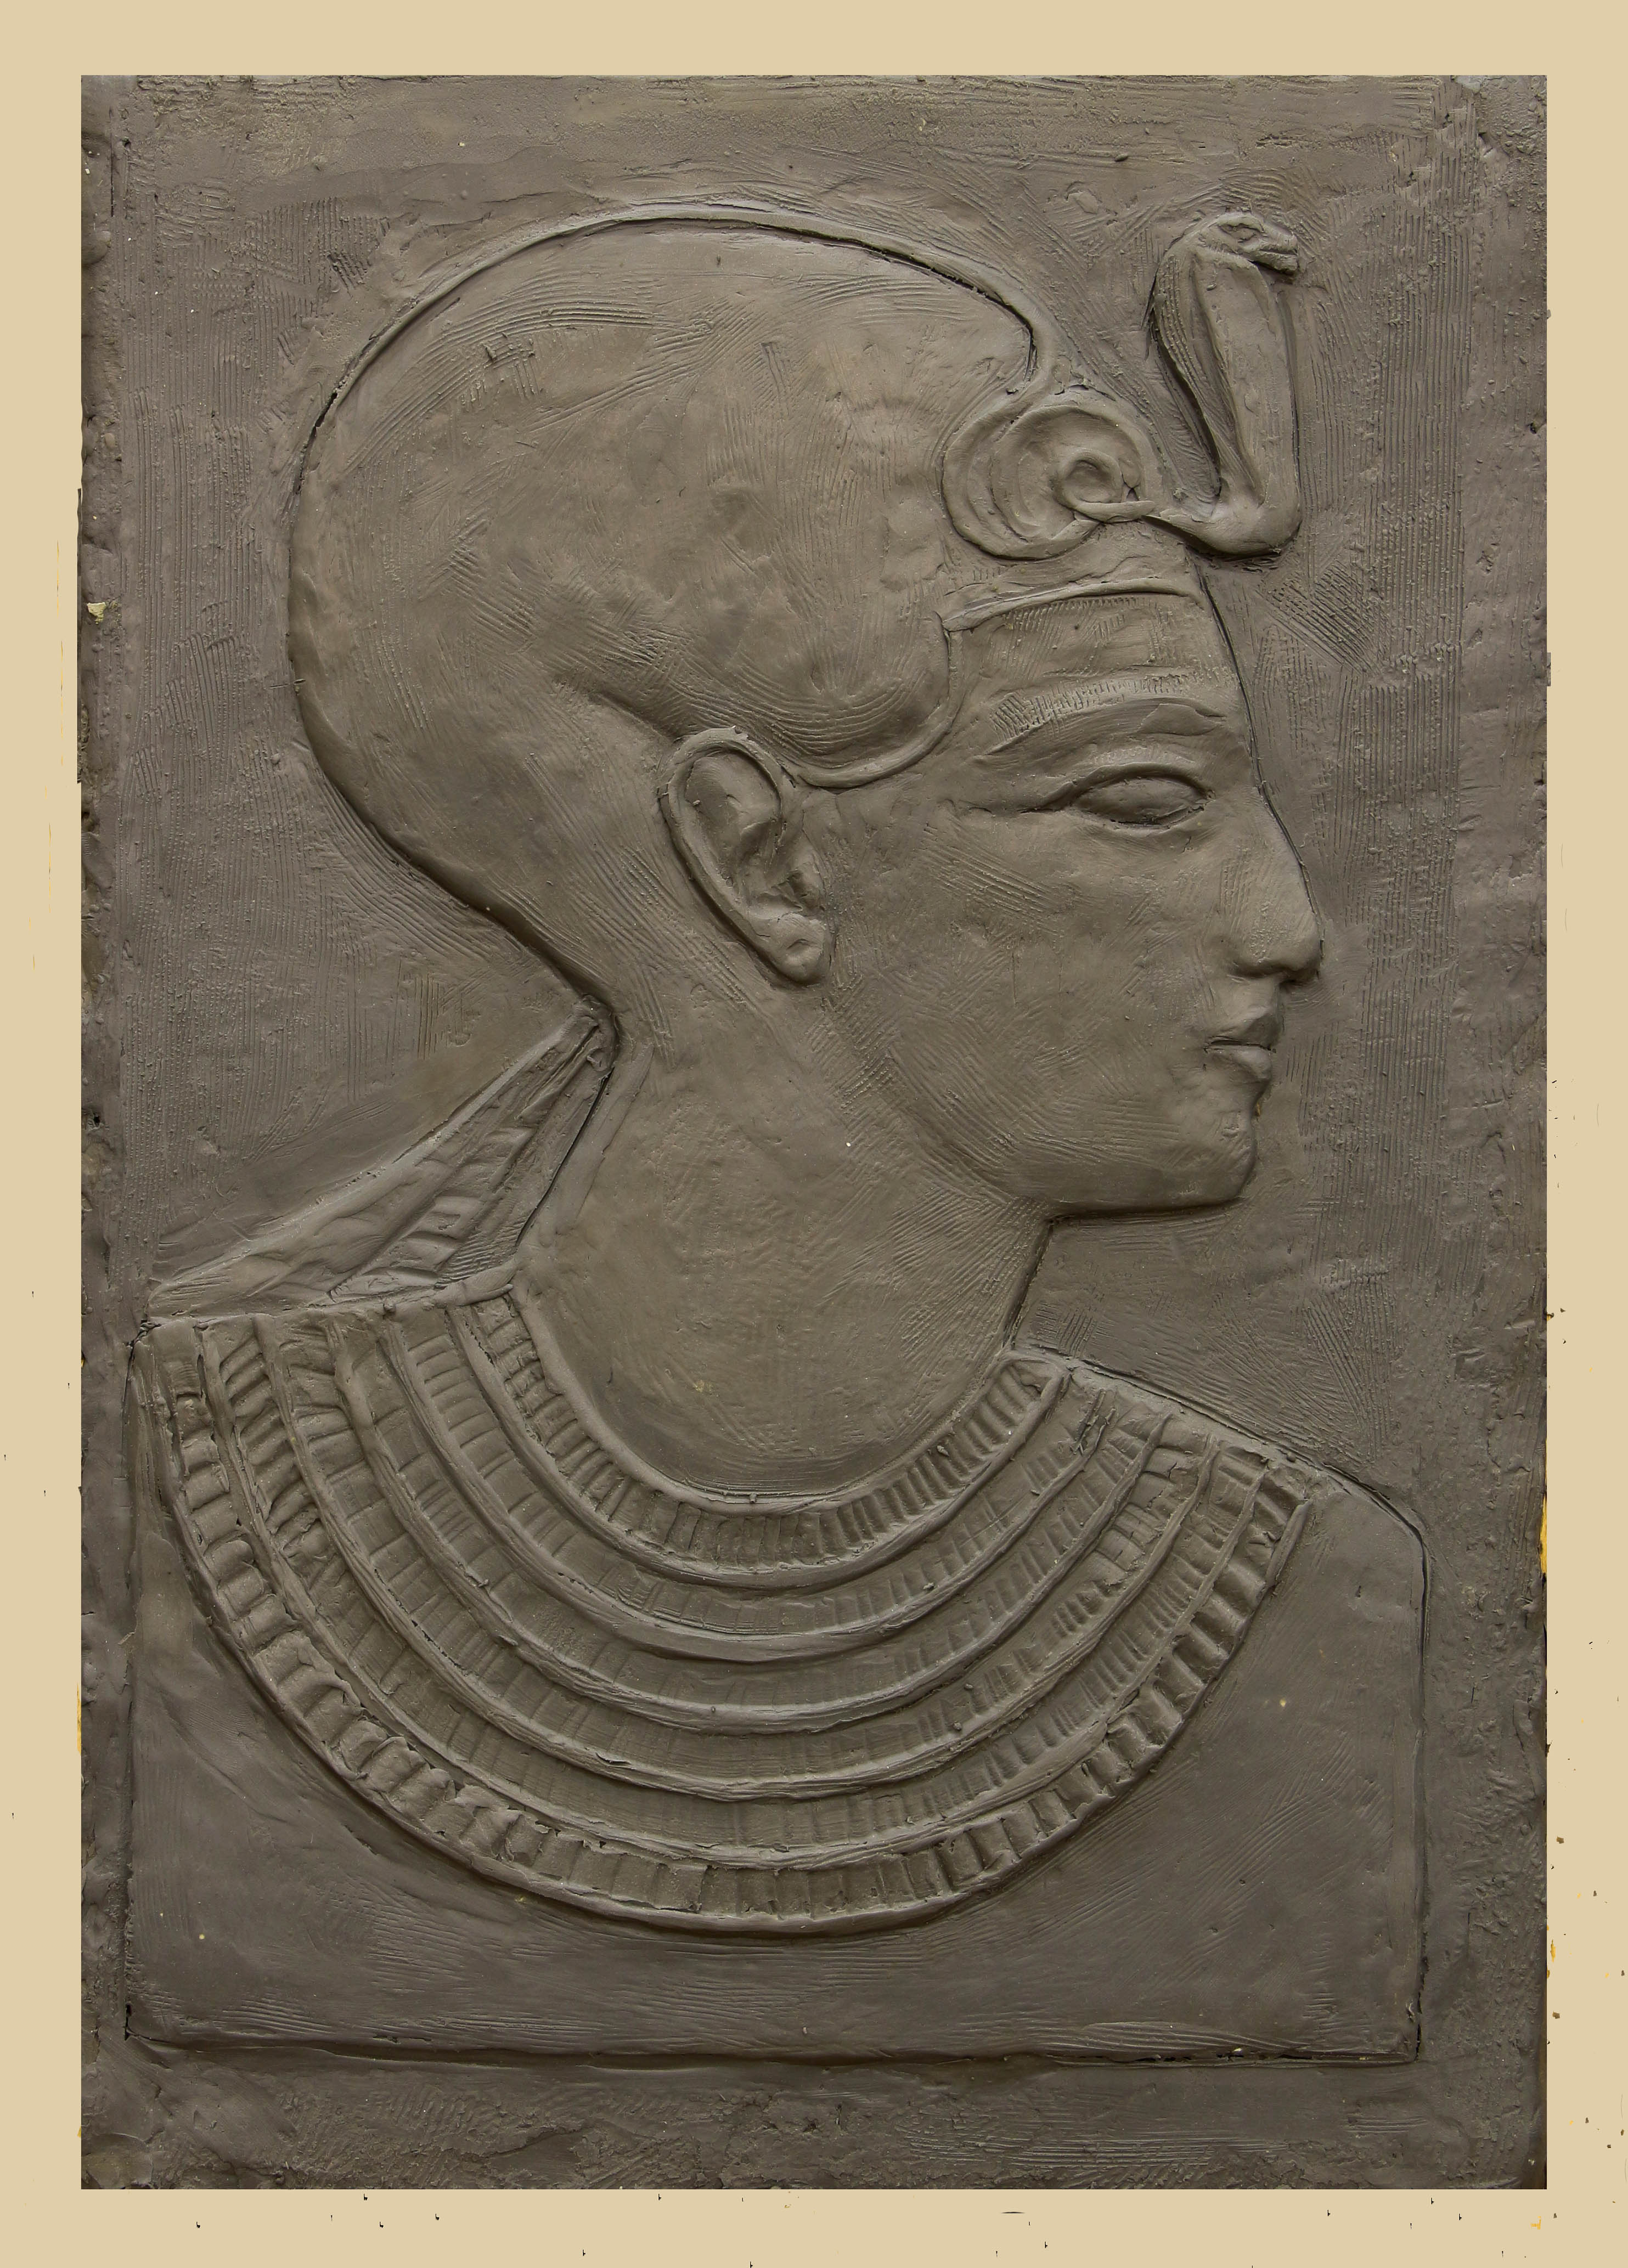 Барельеф - копия изображения фараона Сетти второго.